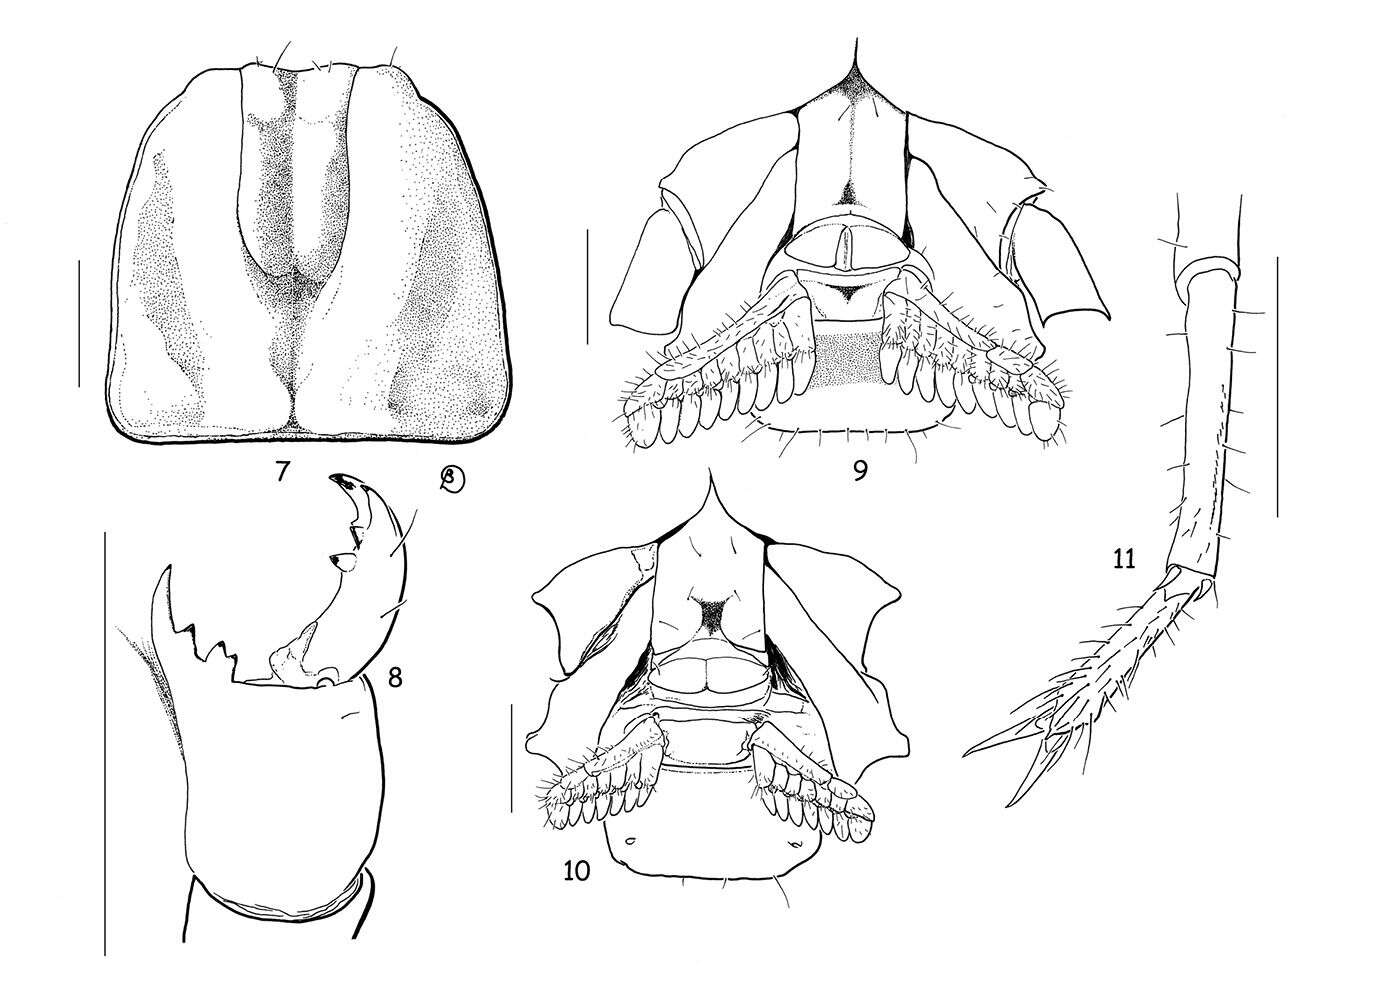 Image of Pseudochactidae